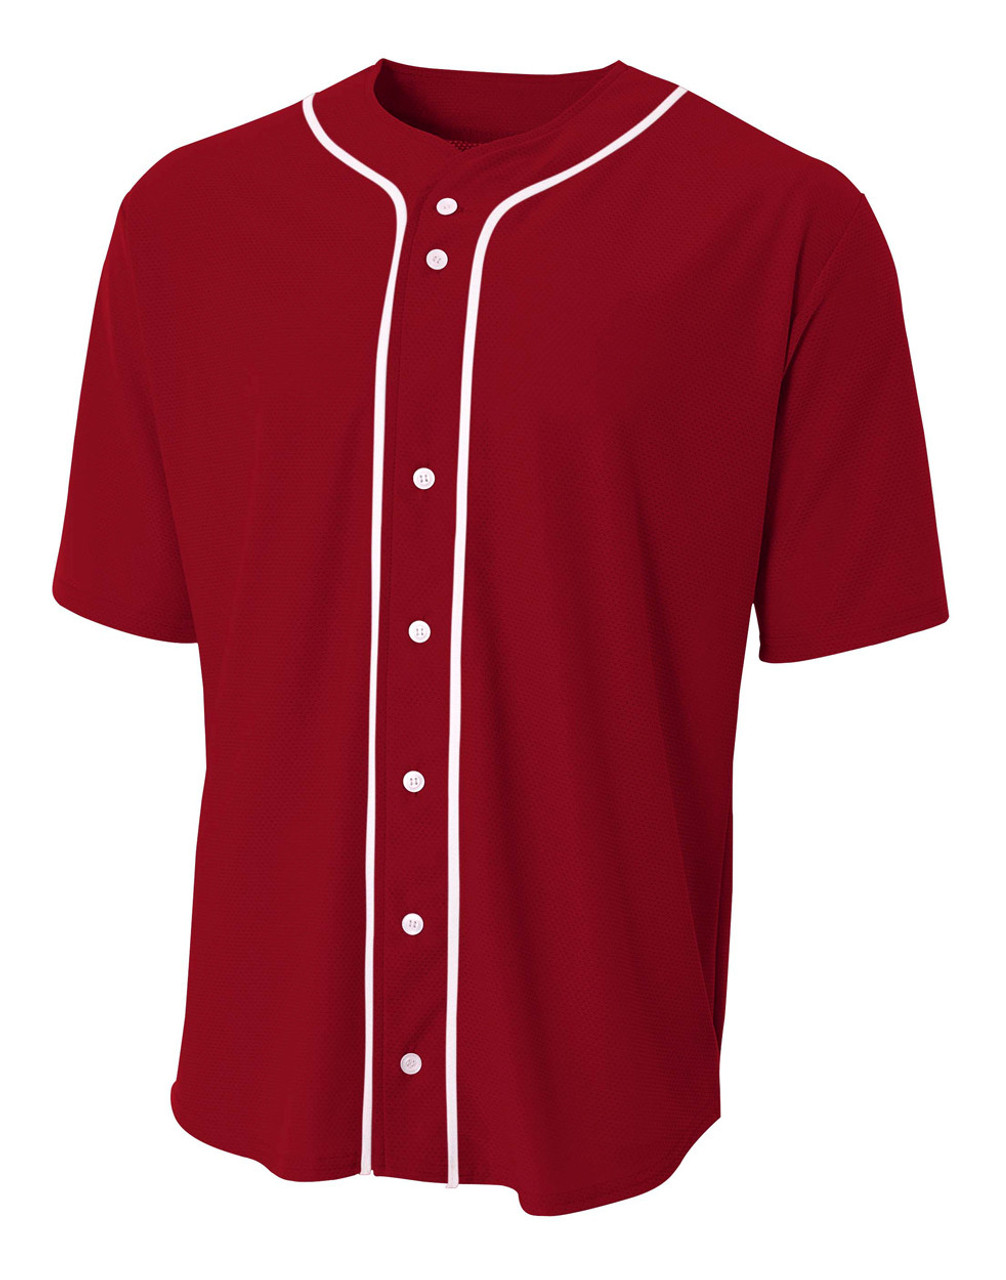 N4184 - A4 Short Sleeve Full Button Baseball Jersey